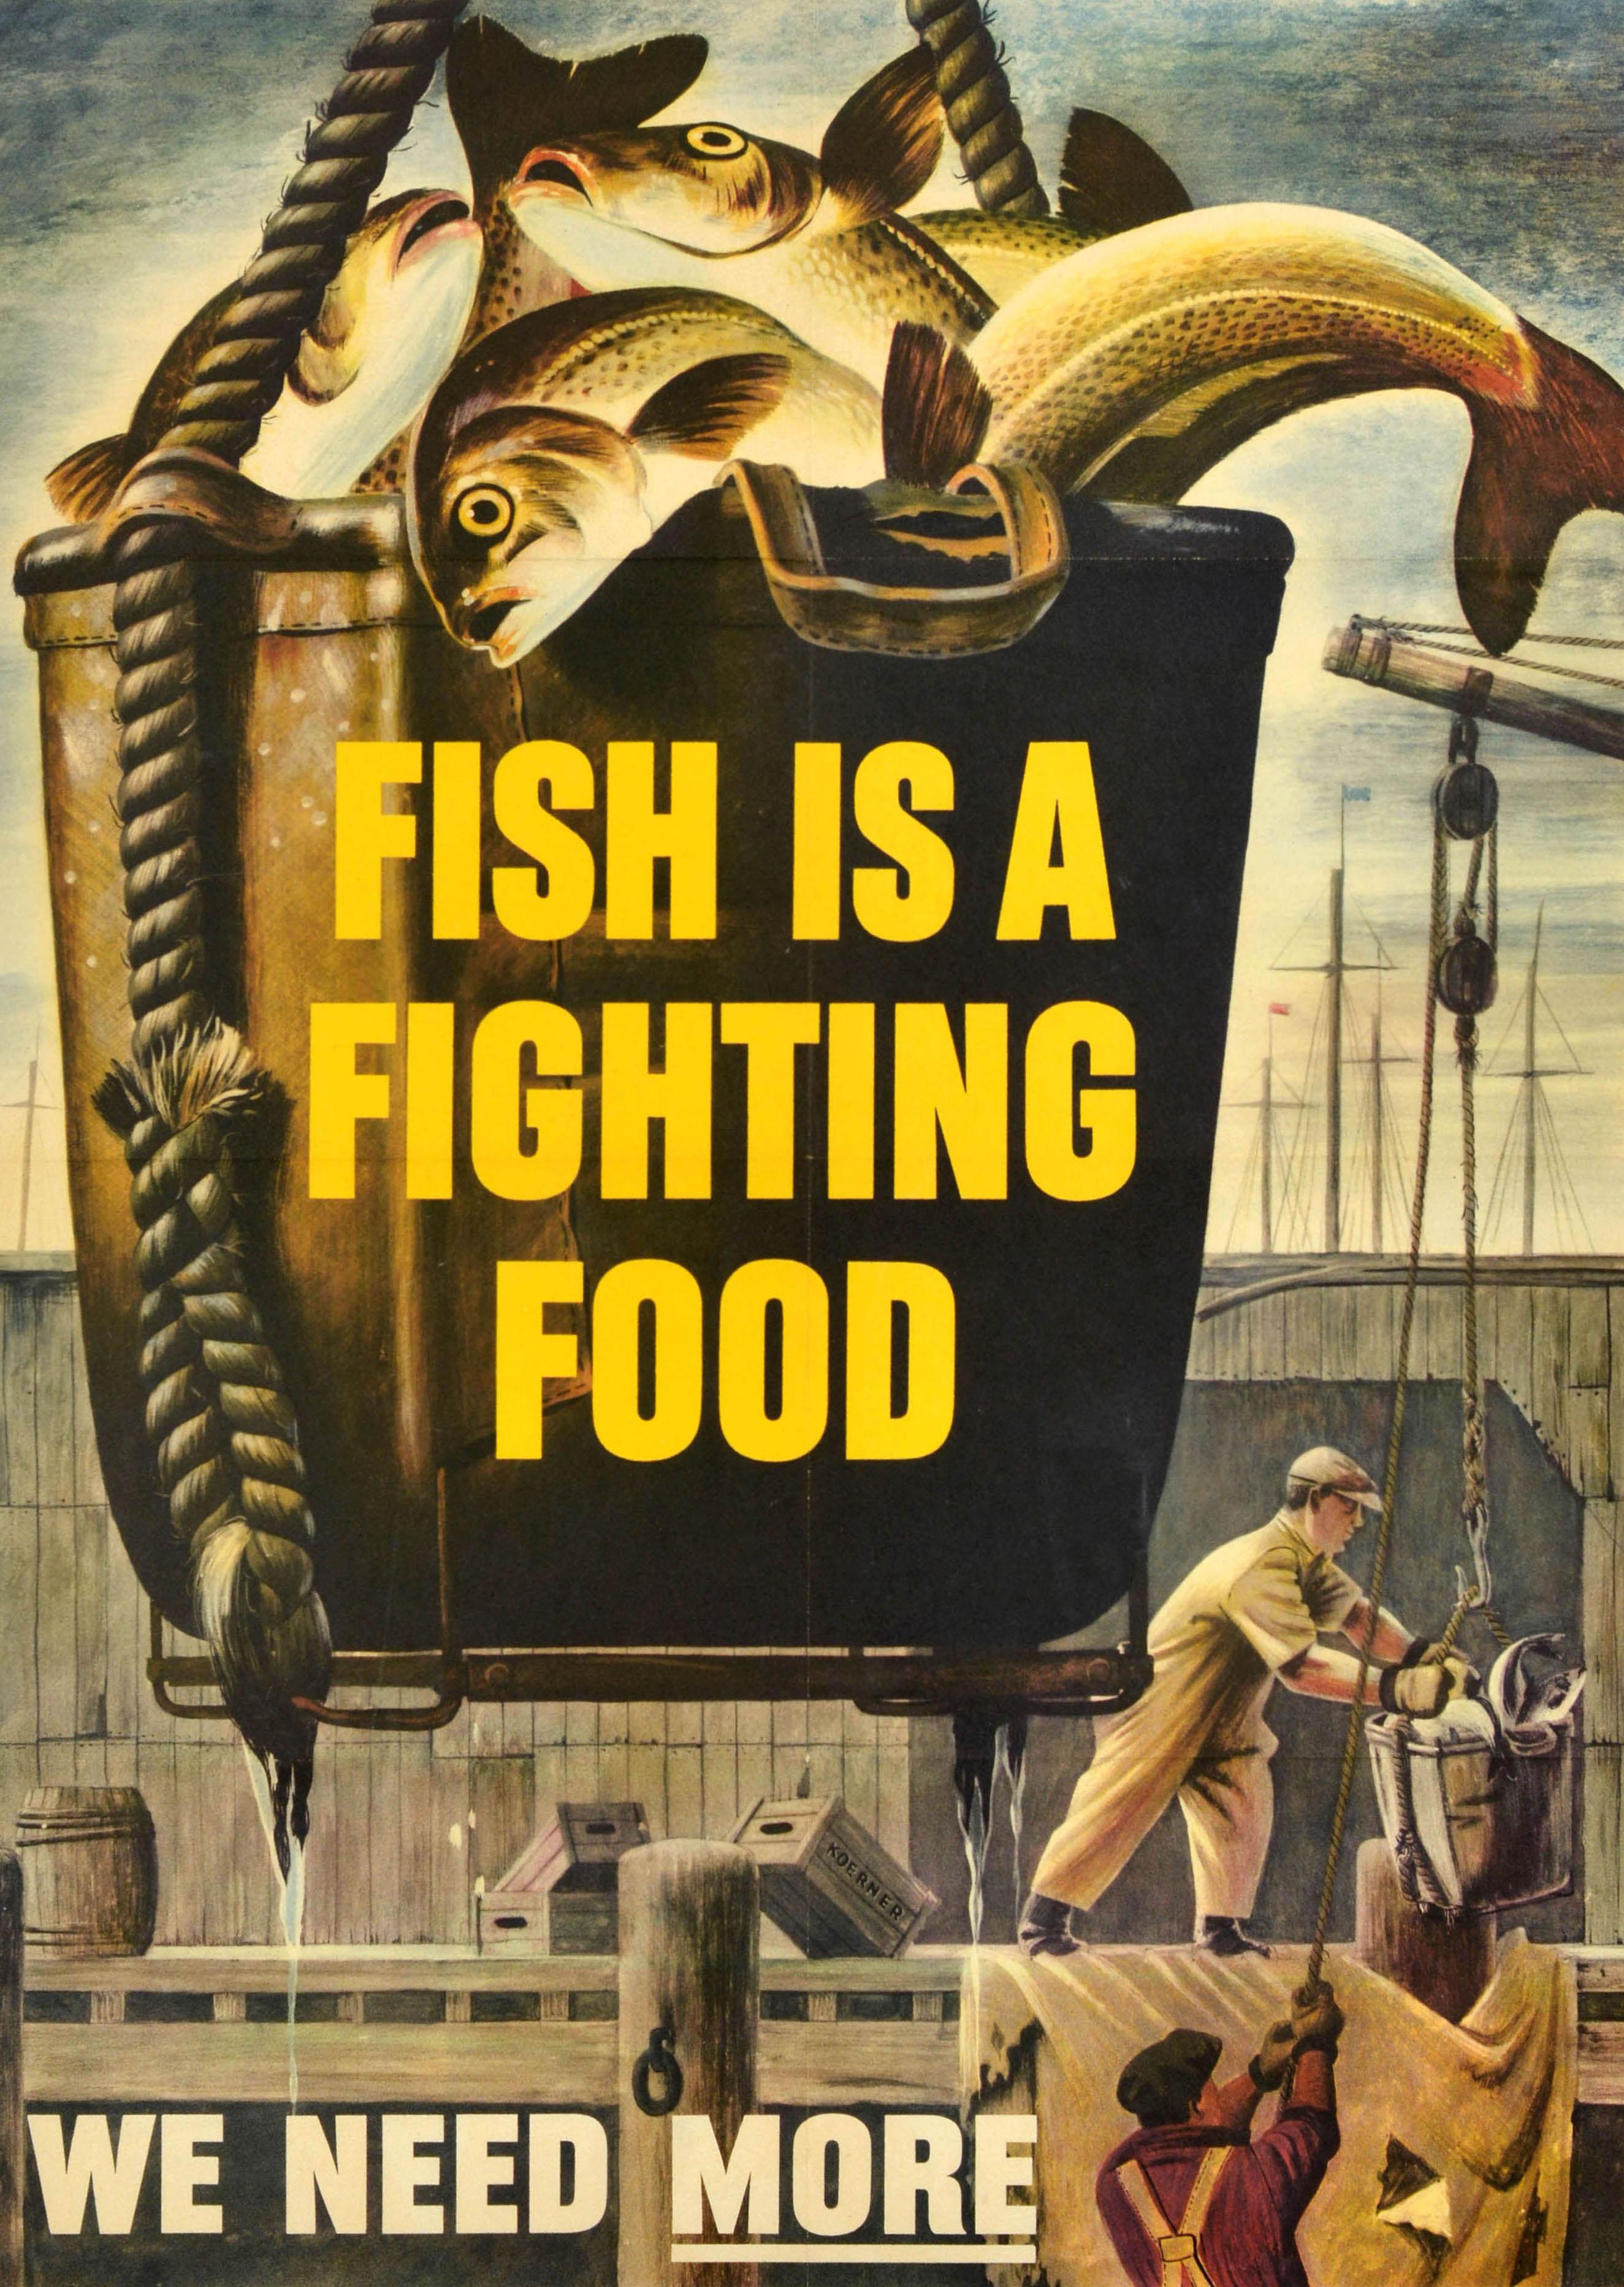 Original-Plakat für die Heimatfront des Zweiten Weltkriegs - Fish is a fighting food We need more - mit einem Bild eines Fischfangs, der in einem Eimer von Fischern auf einem hölzernen Dock mit sichtbaren Masten im Hintergrund eingeholt wird, und